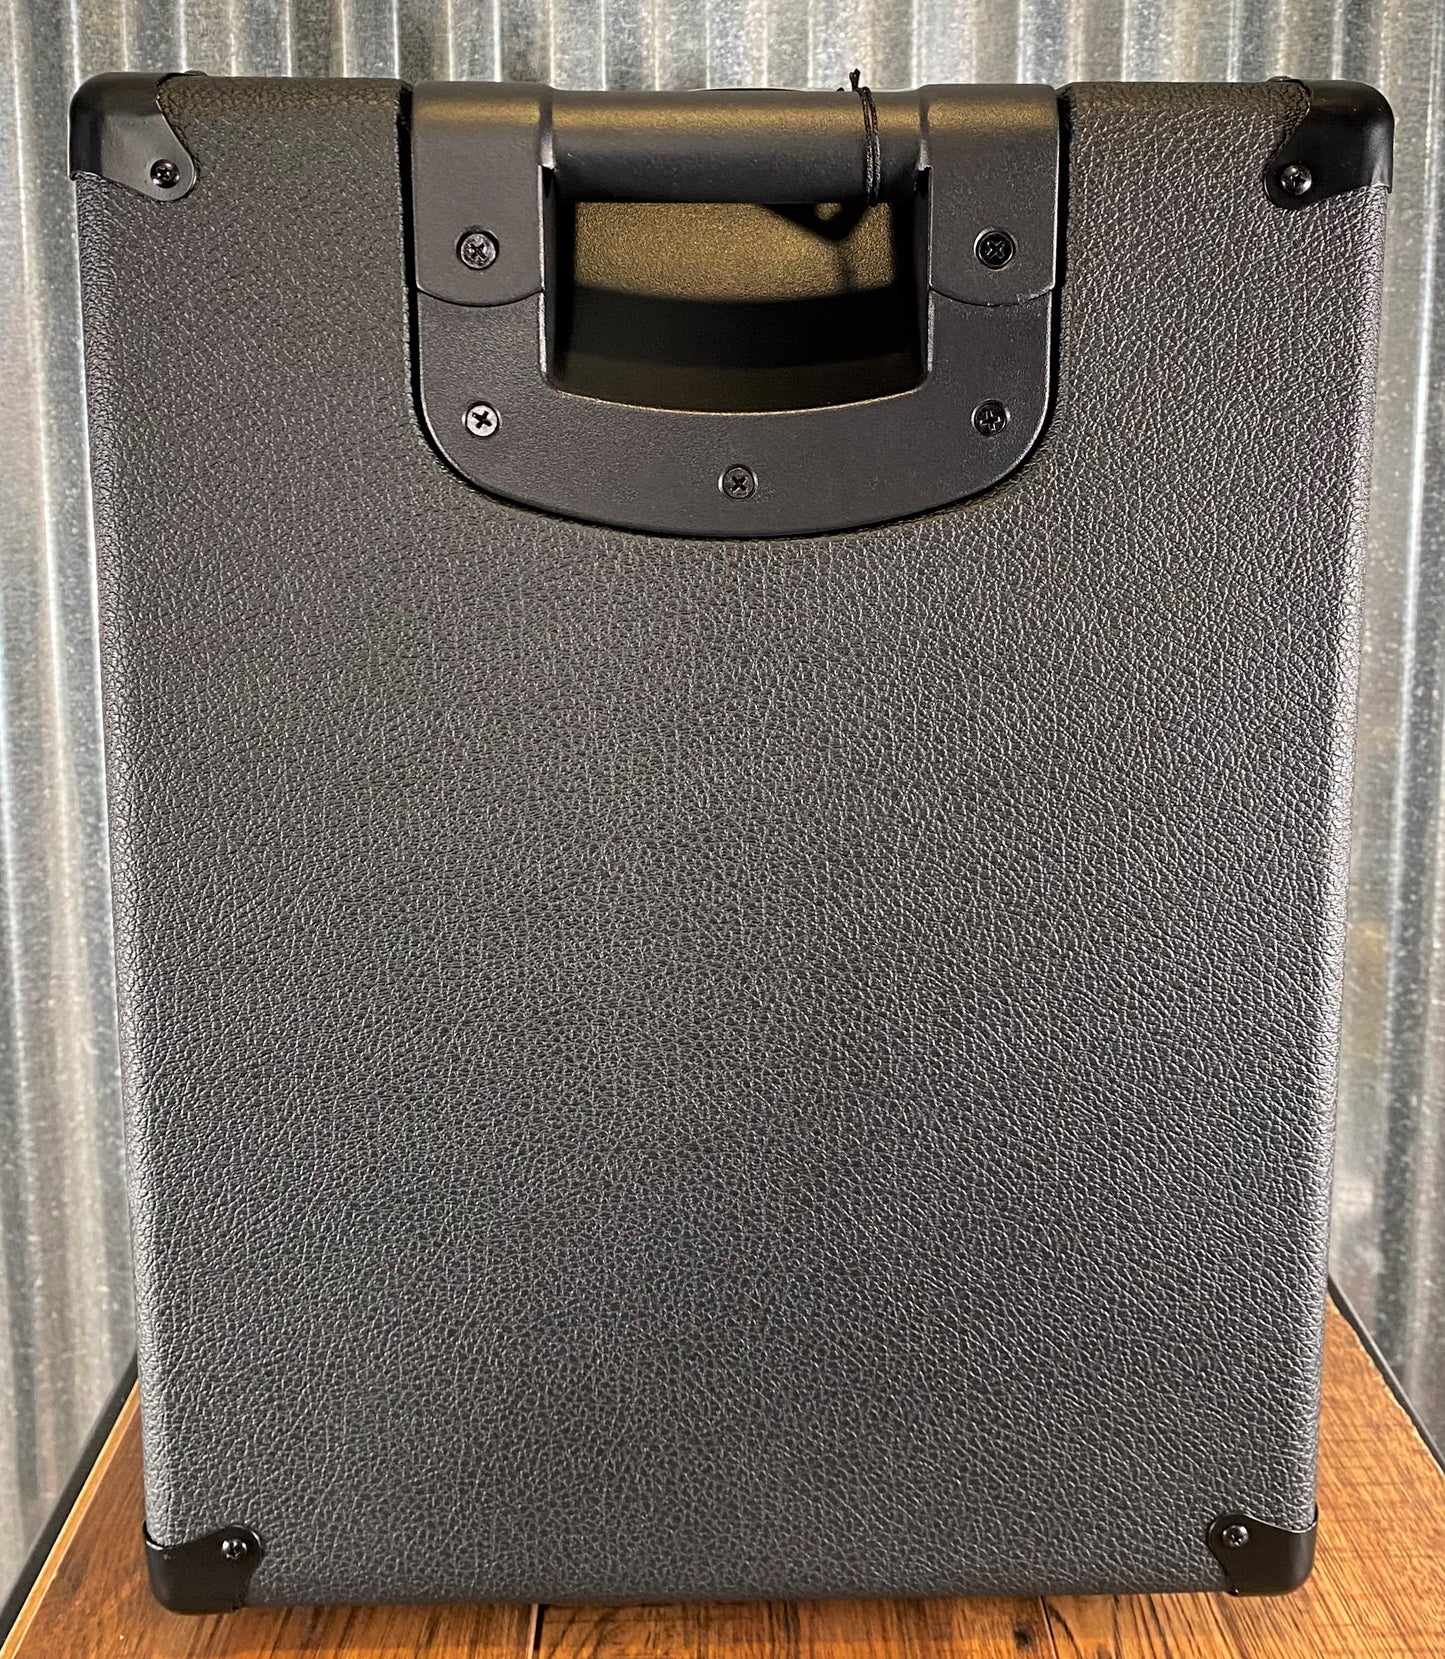 Laney GS212IE 2x12" 160 Watt Guitar Amplifier Extension Speaker Cabinet